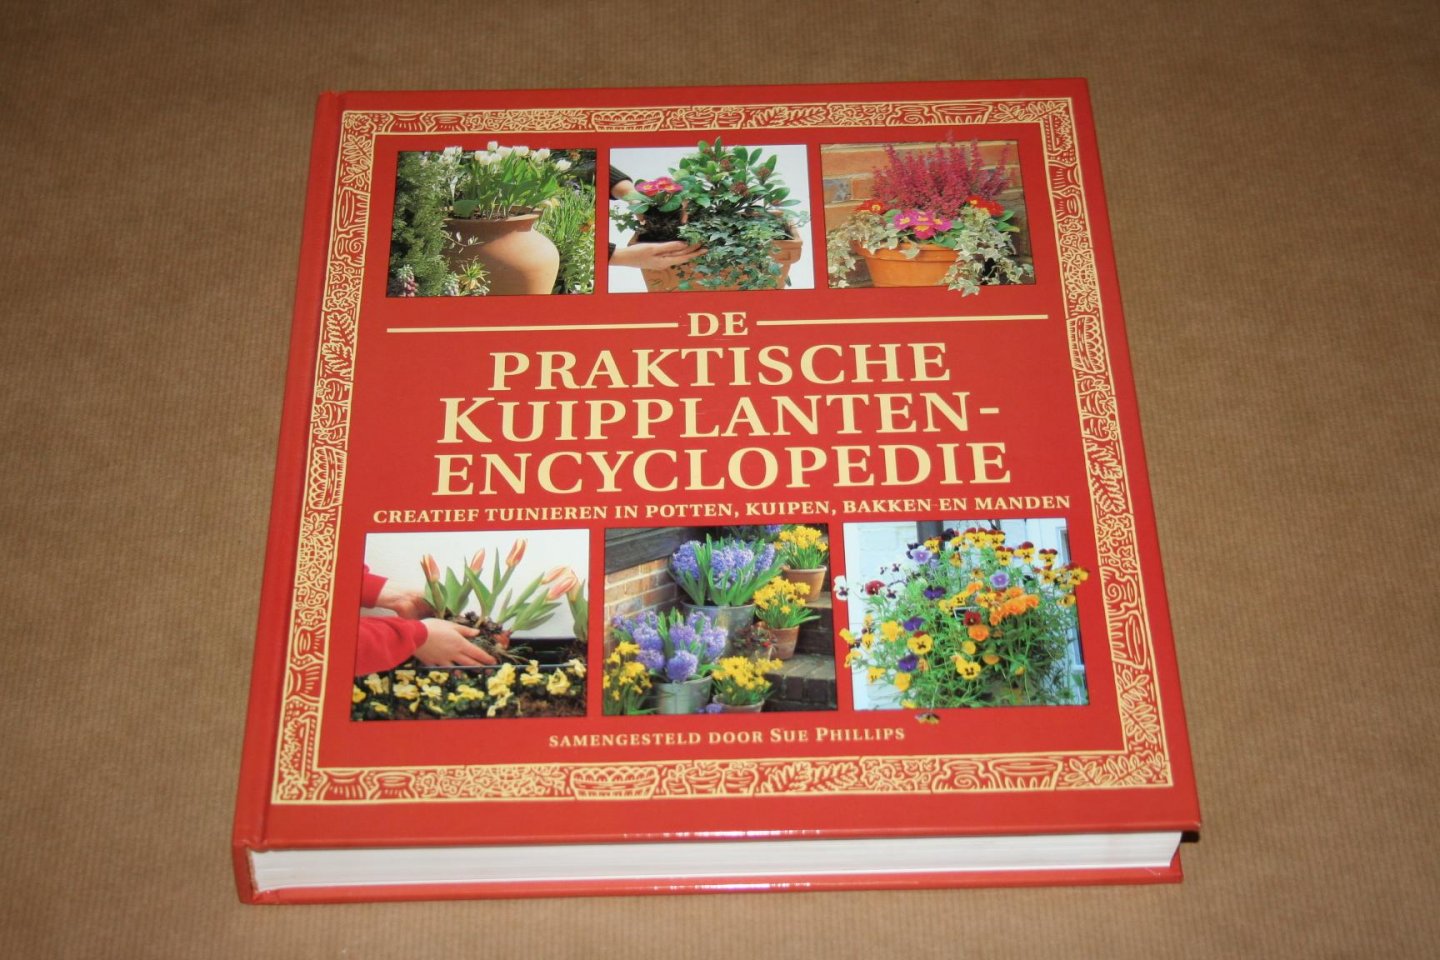 Sue Phillips - De Praktische Kuipplanten-Encyclopedie  --- Creatief tuinieren in potten, kuipen, bakken en manden